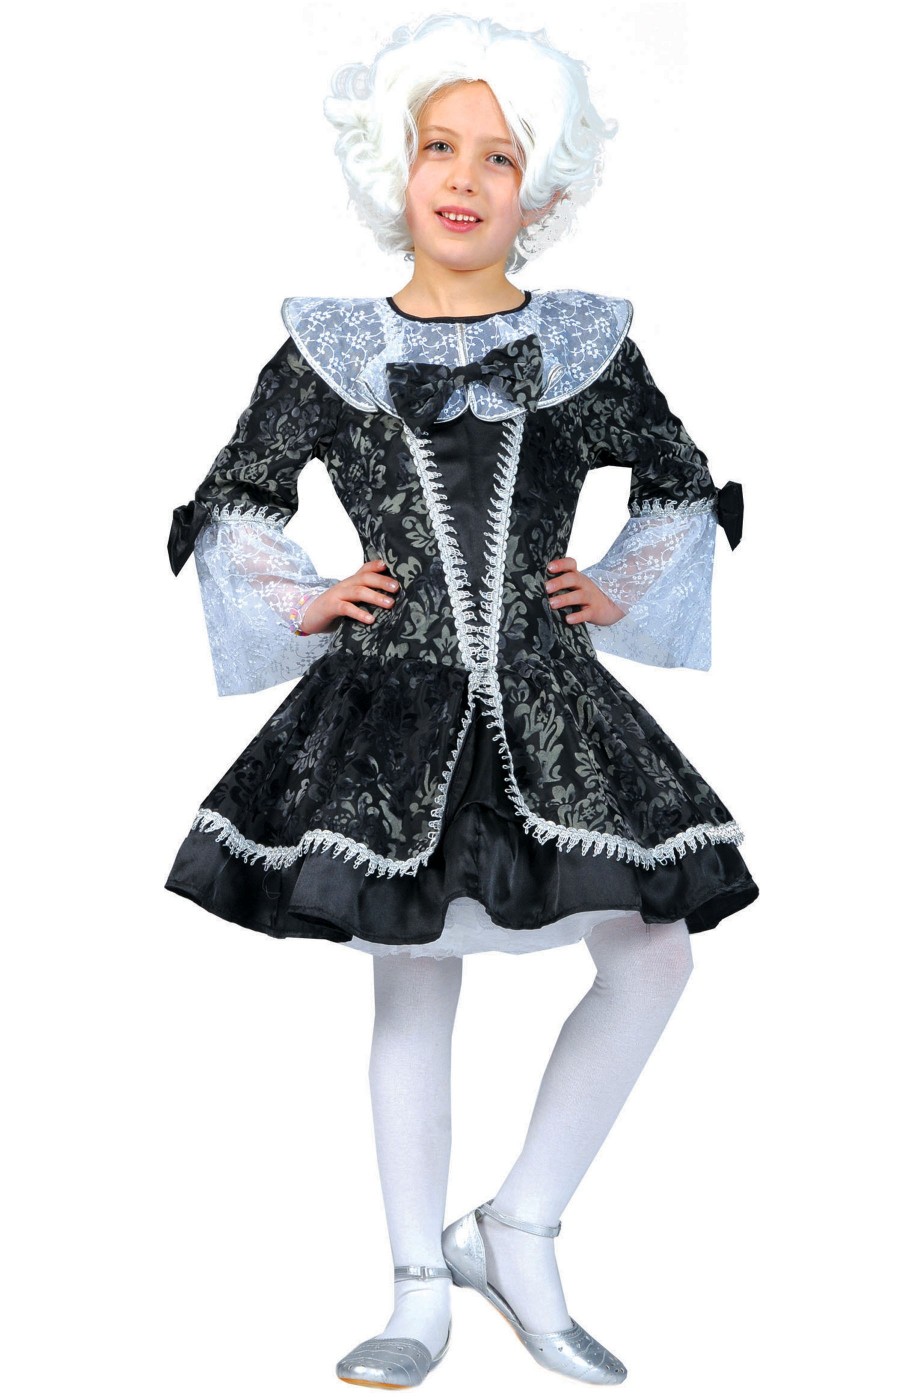 Vestito di carnevale bambina Dama veneziana del 700 corto grigio nero